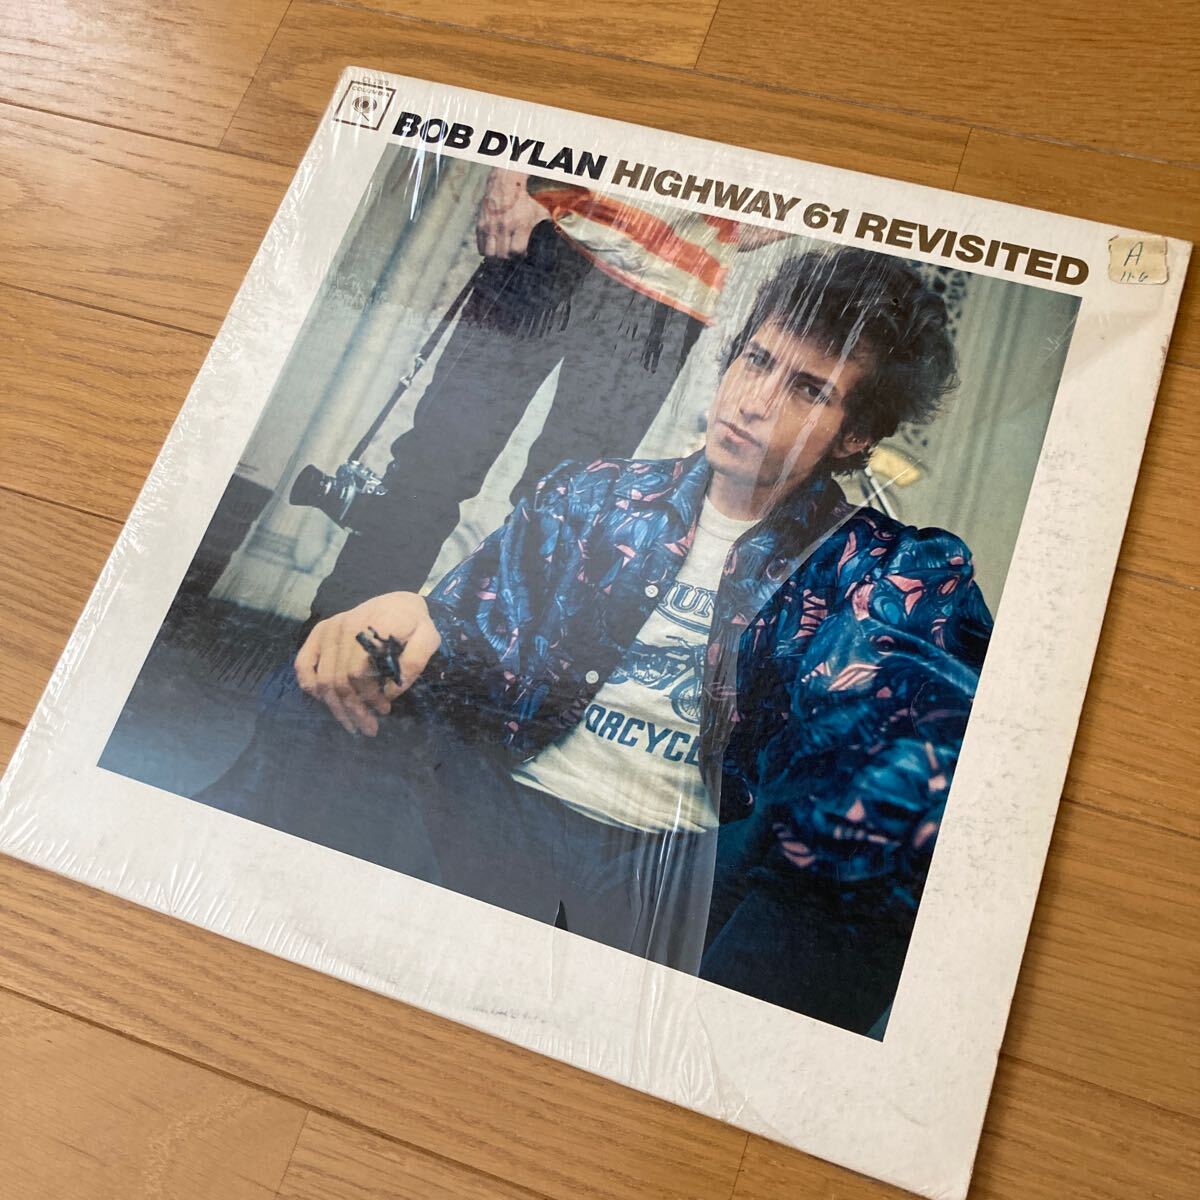 Bob Dylan　追憶のハイウェイ61　米国オリジナルモノラル盤　Highway 61 Revisited 　ボブディラン　両マト1A_画像2